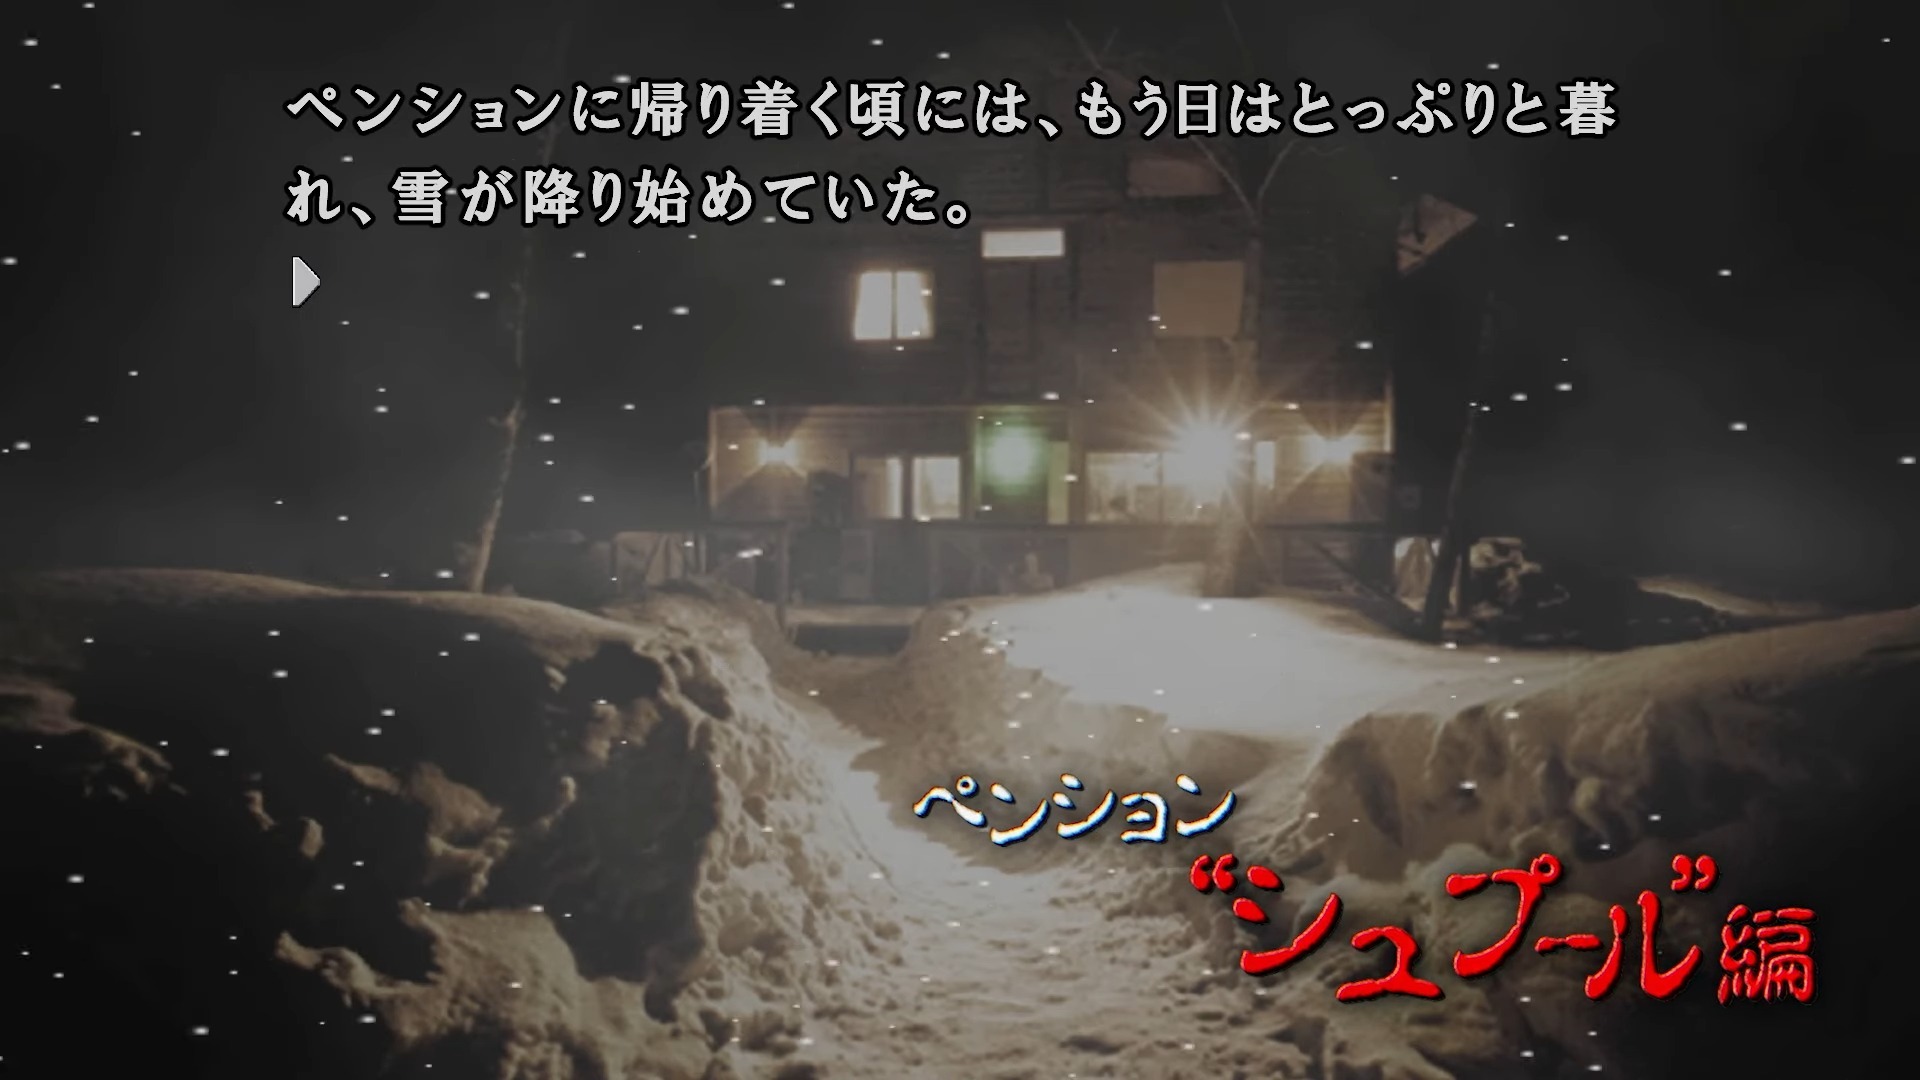 《恐怖惊魂夜×3》日文版 9 月发售 收录系列前两作主线剧情及完结篇的三部曲